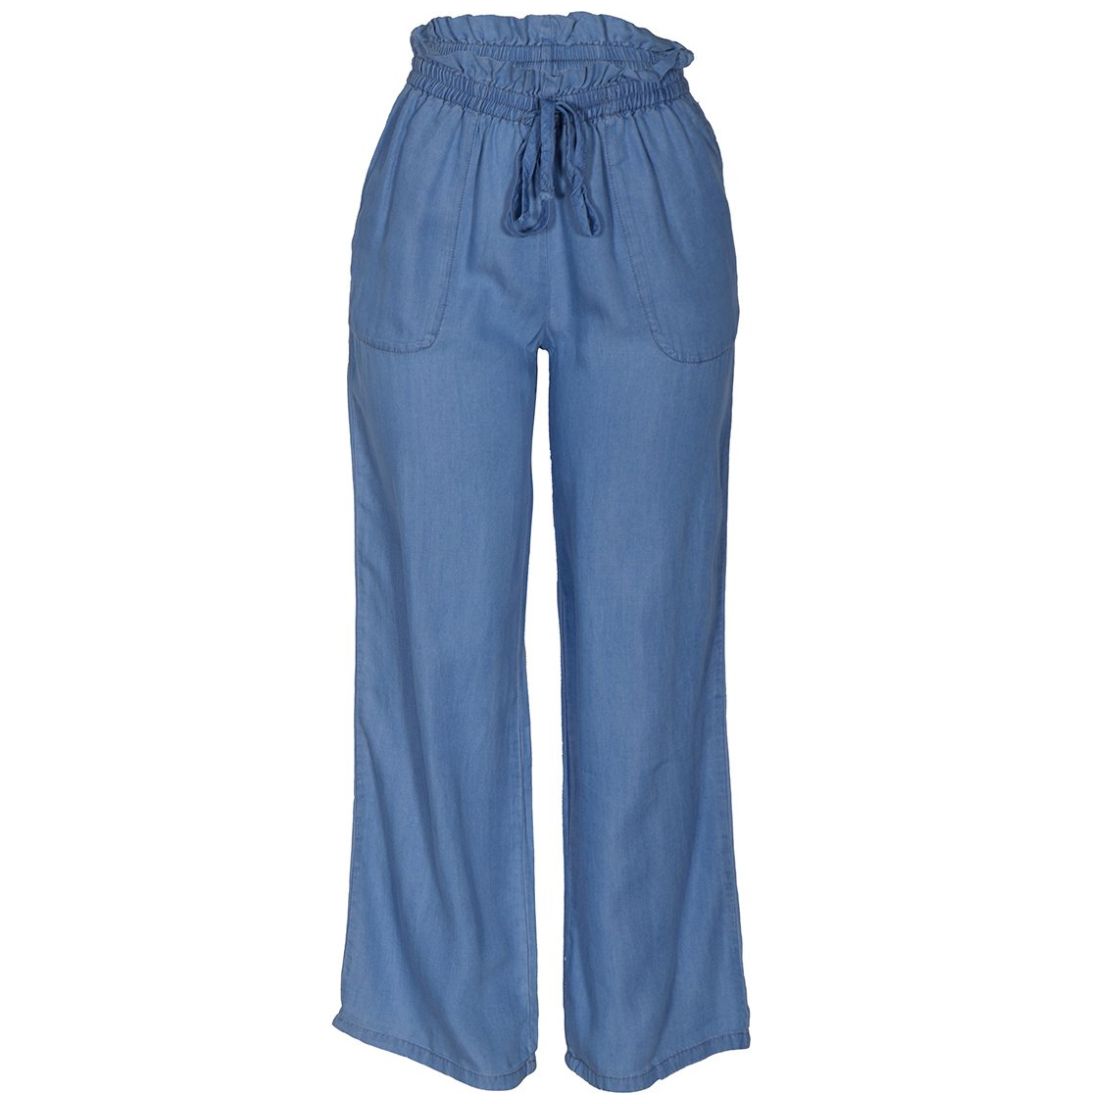 Pantalón Recto Azul Marino para Mujer con Cinturilla Elástica y Cremallera  Combinado Pide Online | Línea G